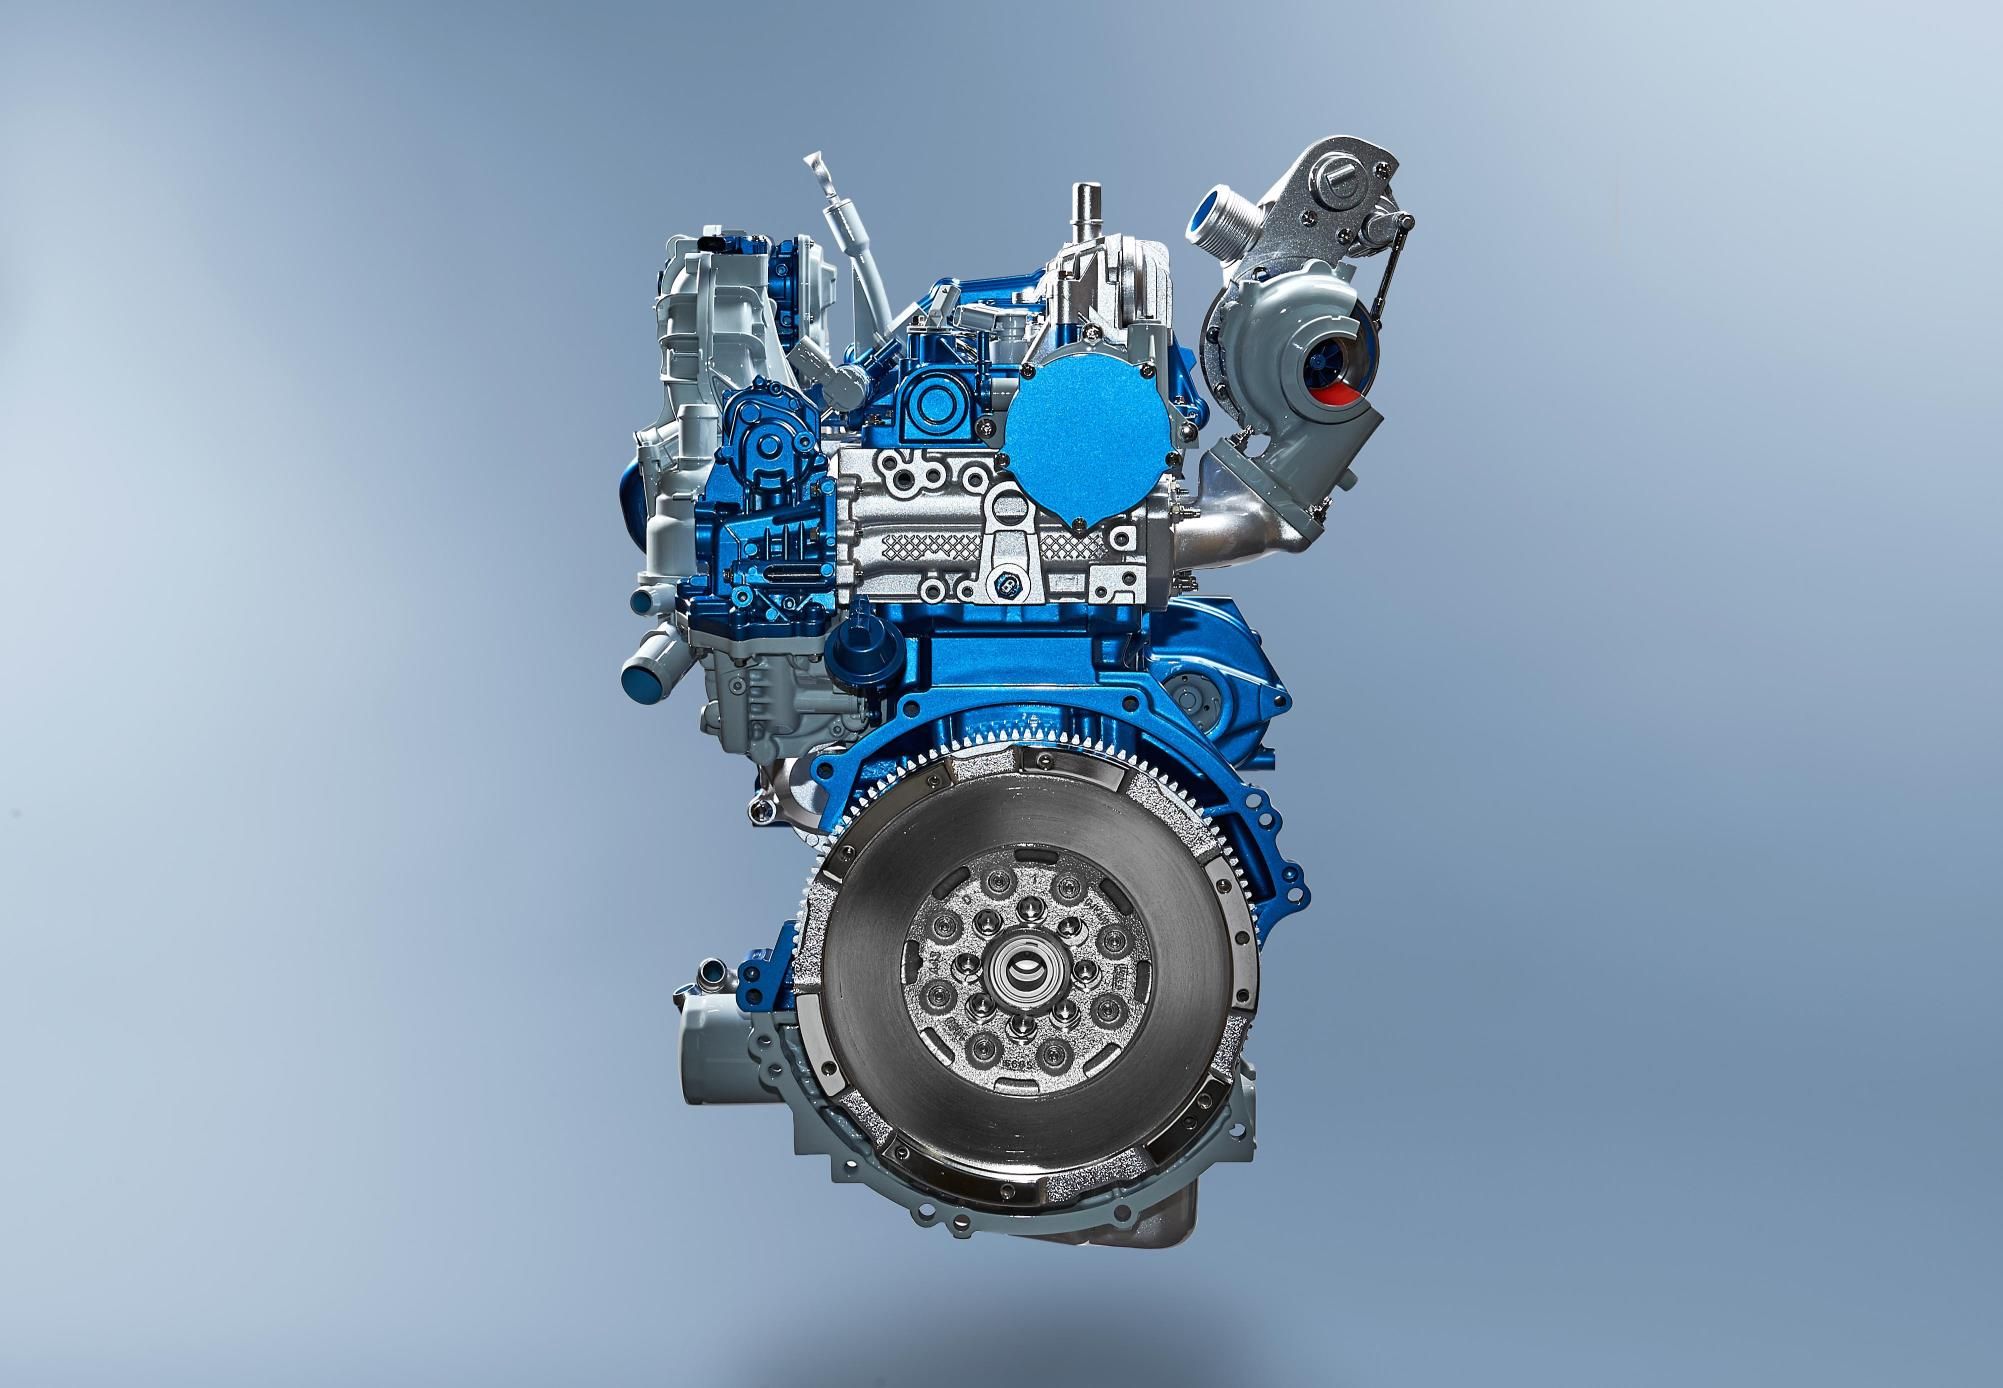 Технические характеристики Ford Focus 2 – размеры, клиренс ...